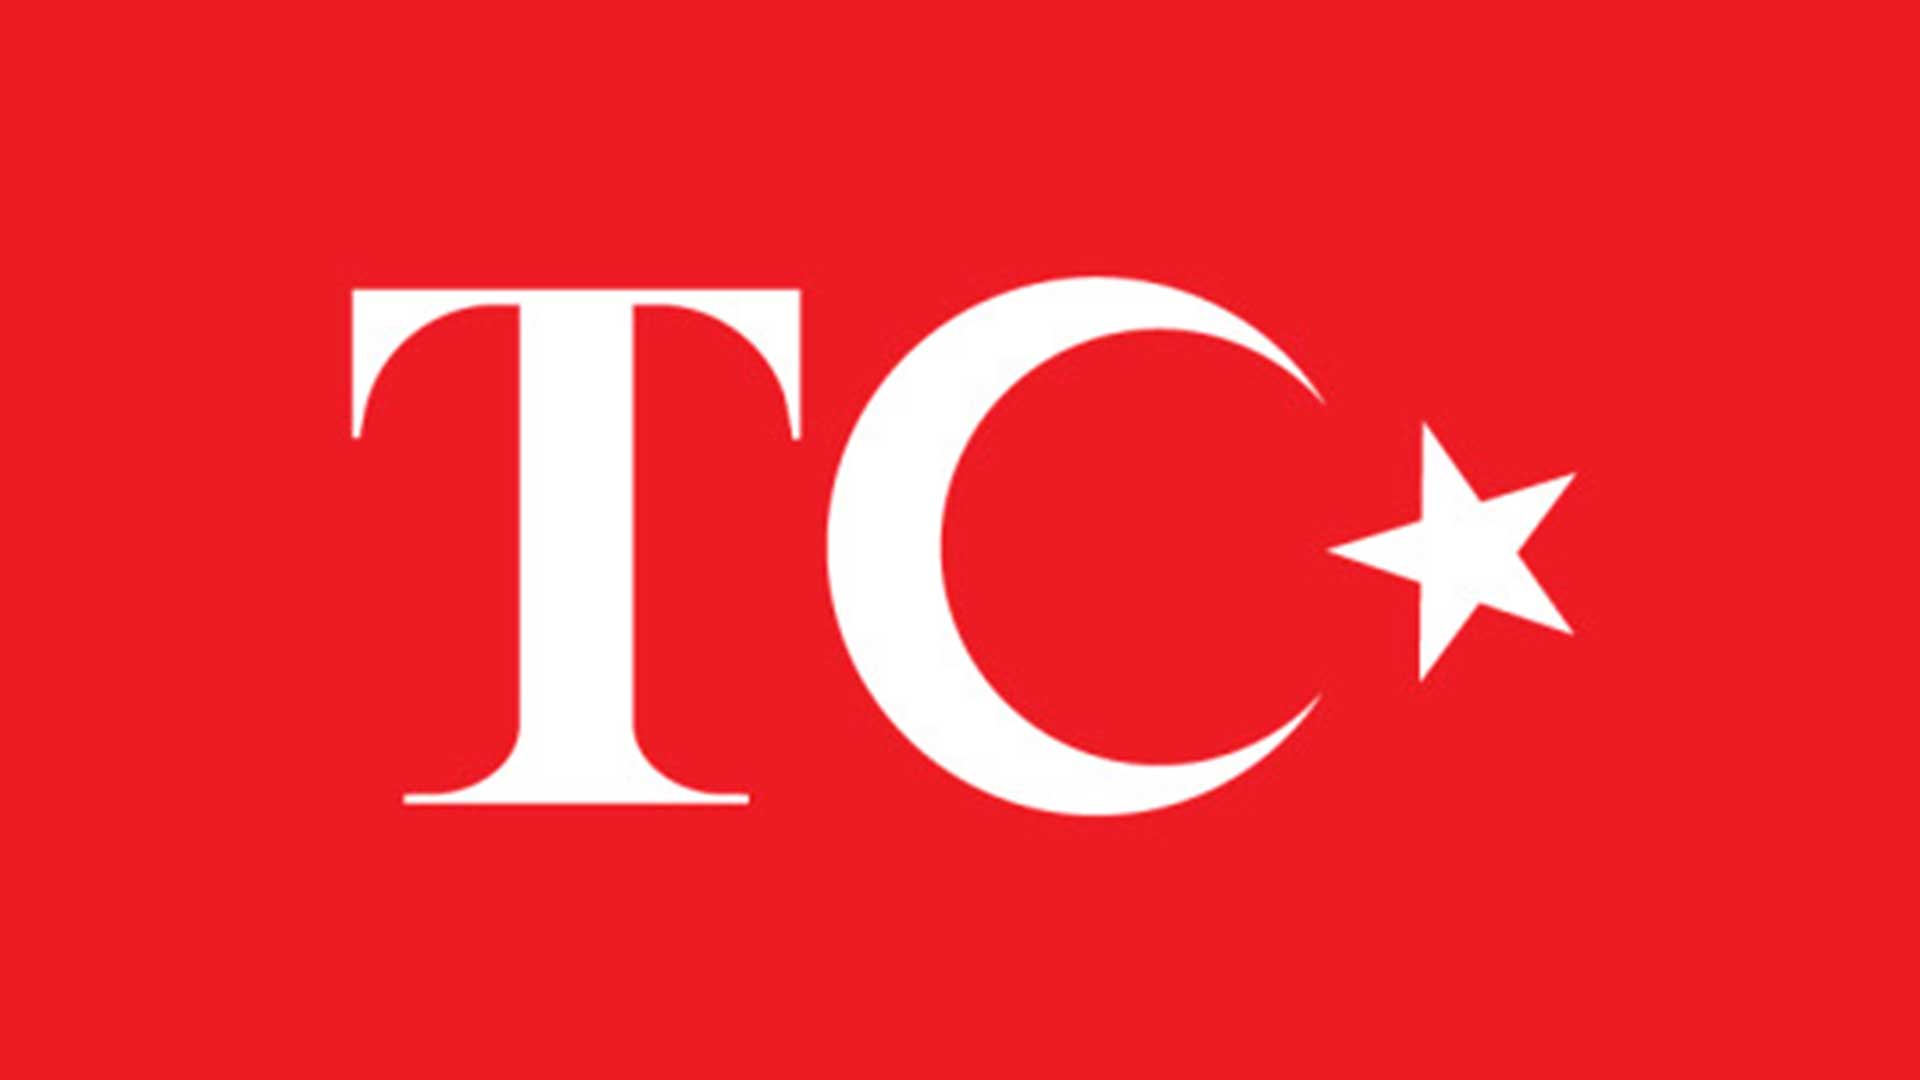 Turk bayragi resimi 20